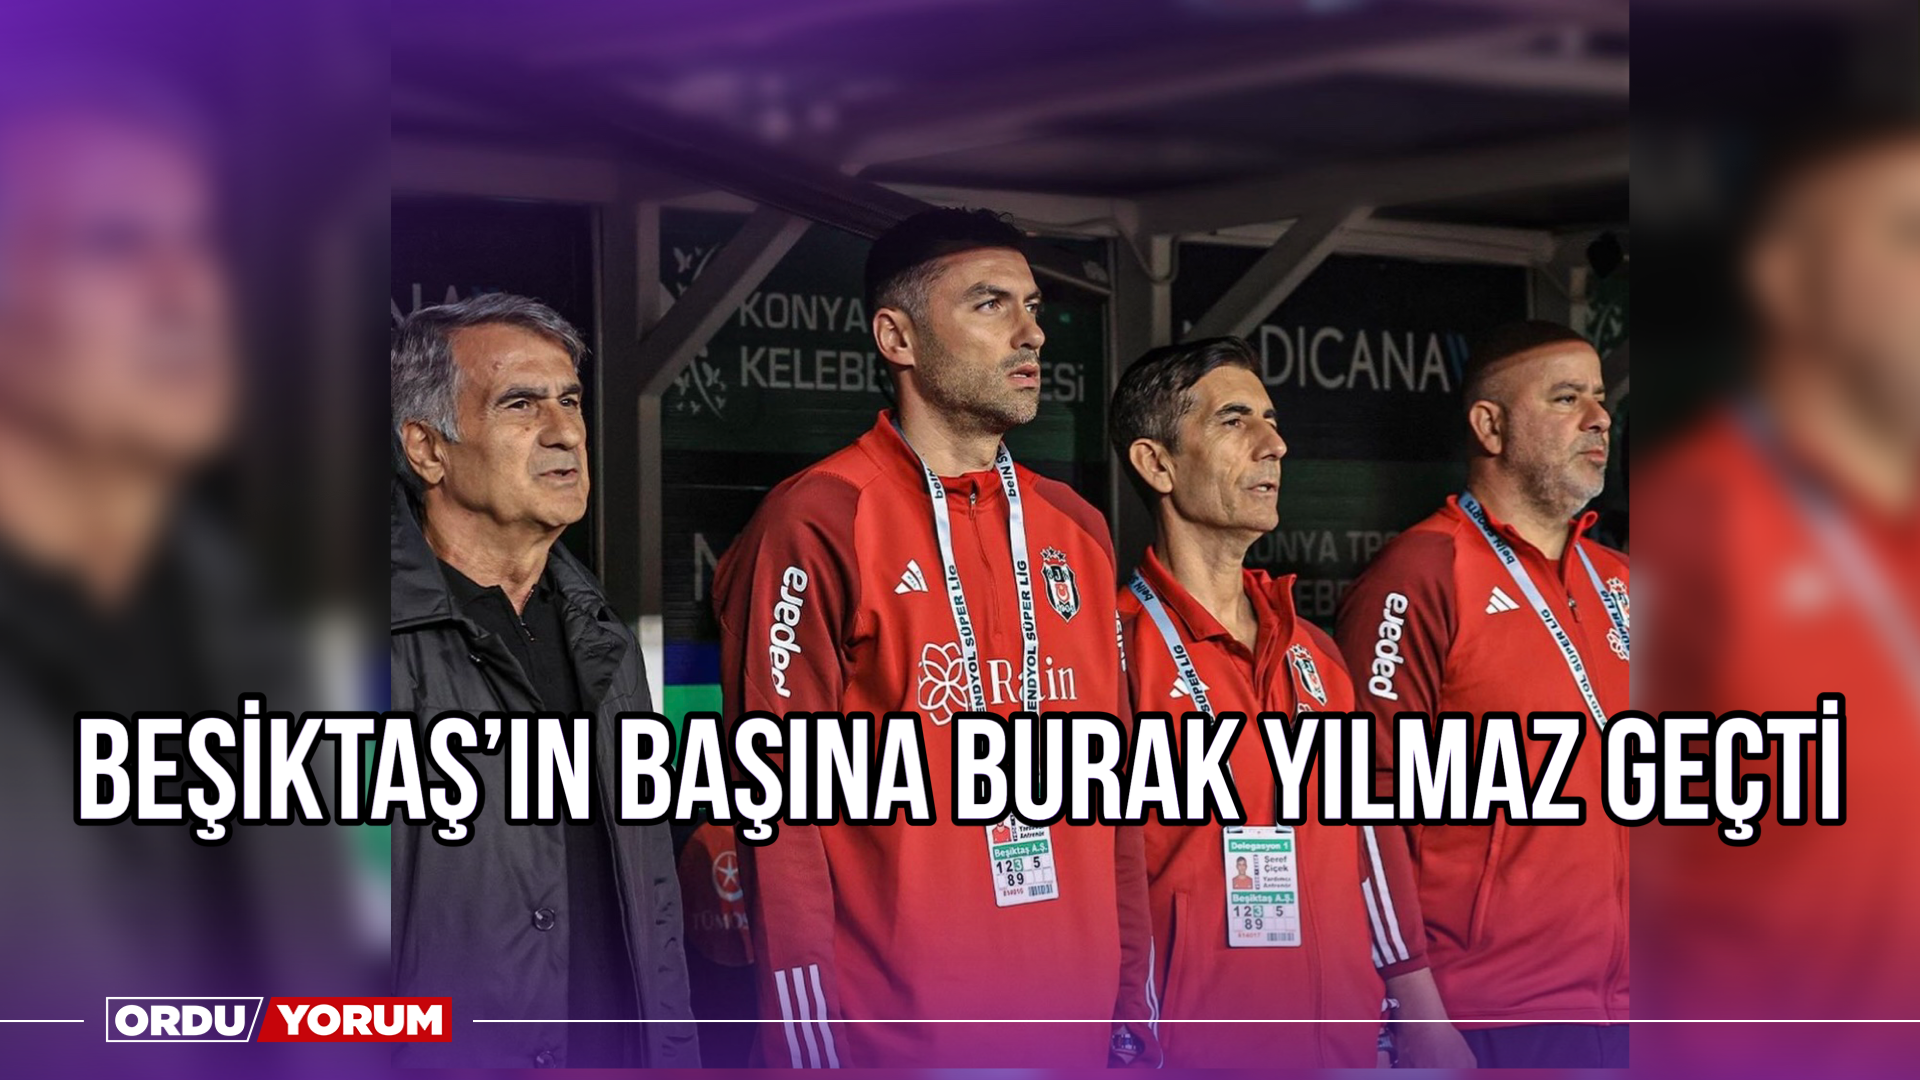 Beşiktaş'ta İstanbulspor maçında Burak Yılmaz teknik direktör